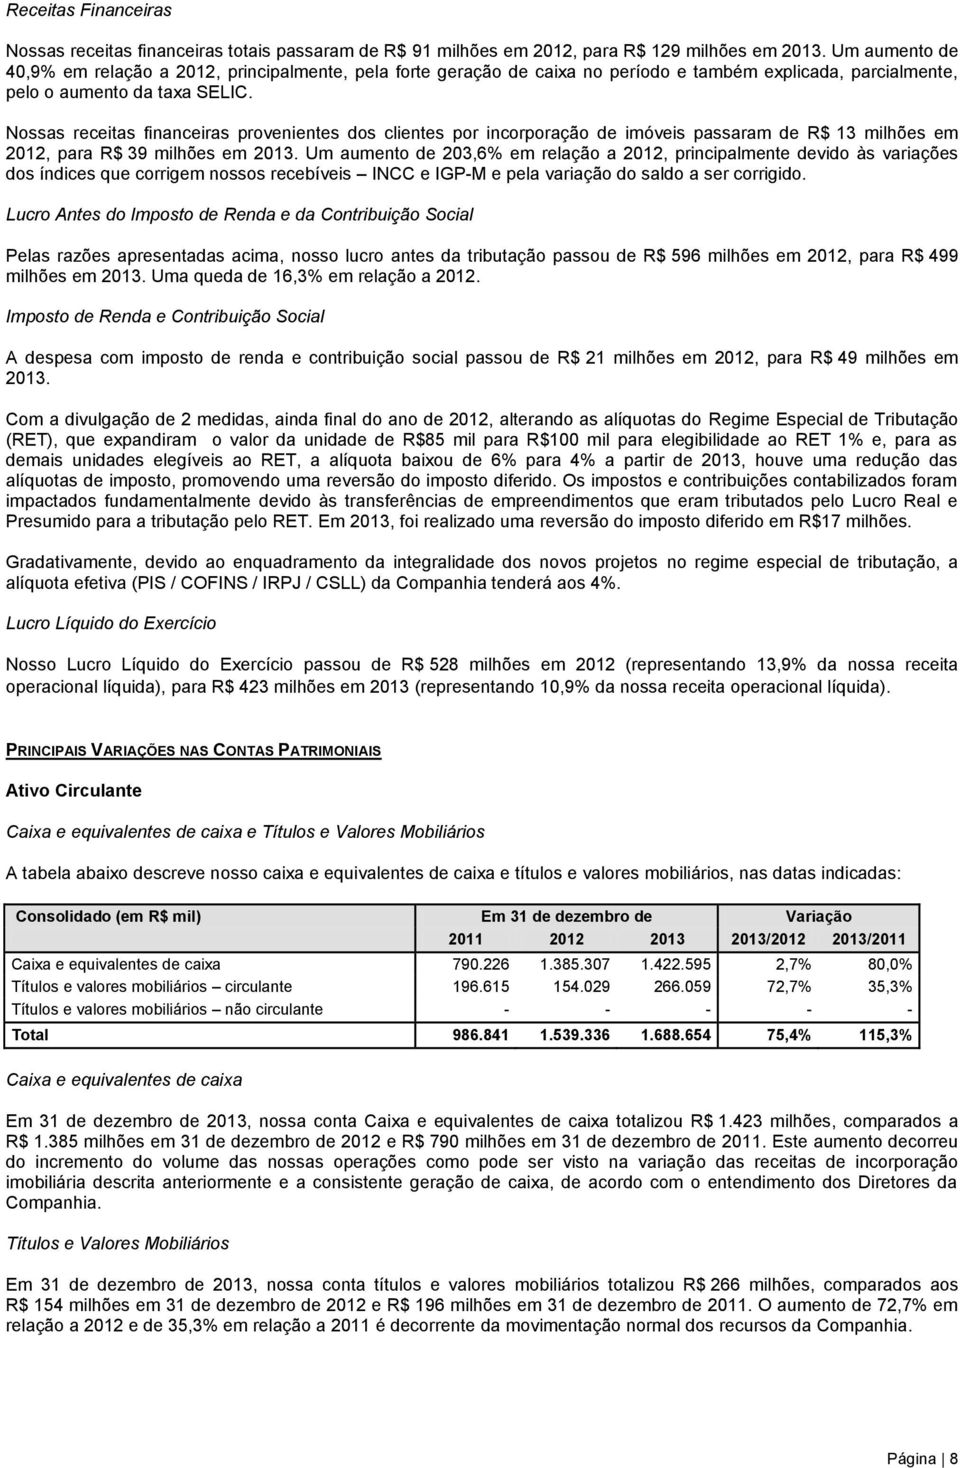 Nossas receitas financeiras provenientes dos clientes por incorporação de imóveis passaram de R$ 13 milhões em 2012, para R$ 39 milhões em 2013.